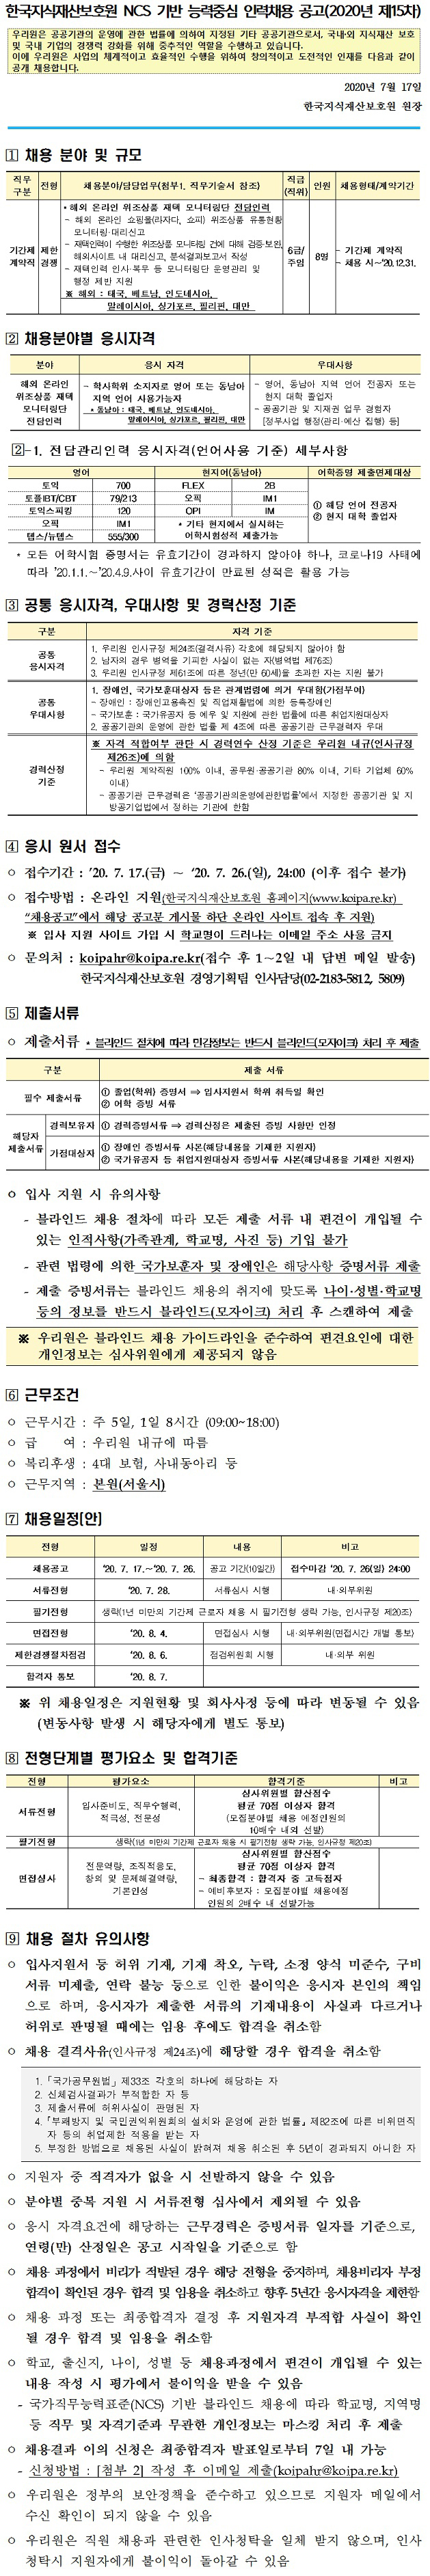 [채용공고_2020년 제15차] 한국지식재산보호원 NCS 기반 능력중심 인력채용 공고